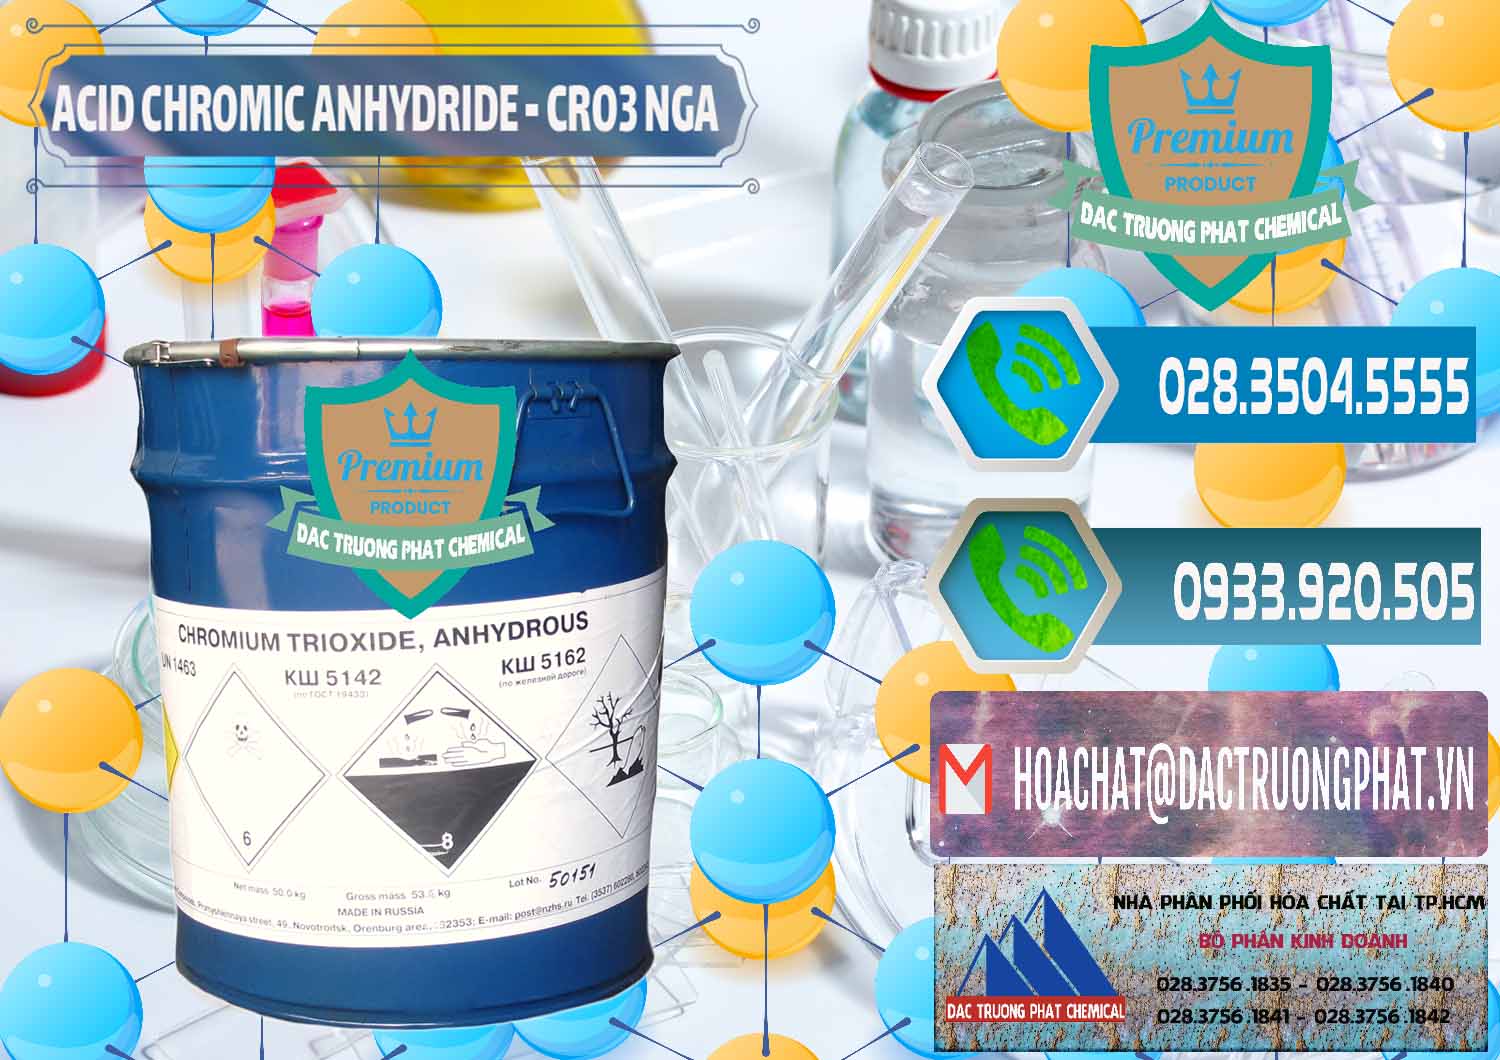 Cty nhập khẩu và bán Acid Chromic Anhydride - Cromic CRO3 Nga Russia - 0006 - Cty cung cấp và kinh doanh hóa chất tại TP.HCM - congtyhoachat.net